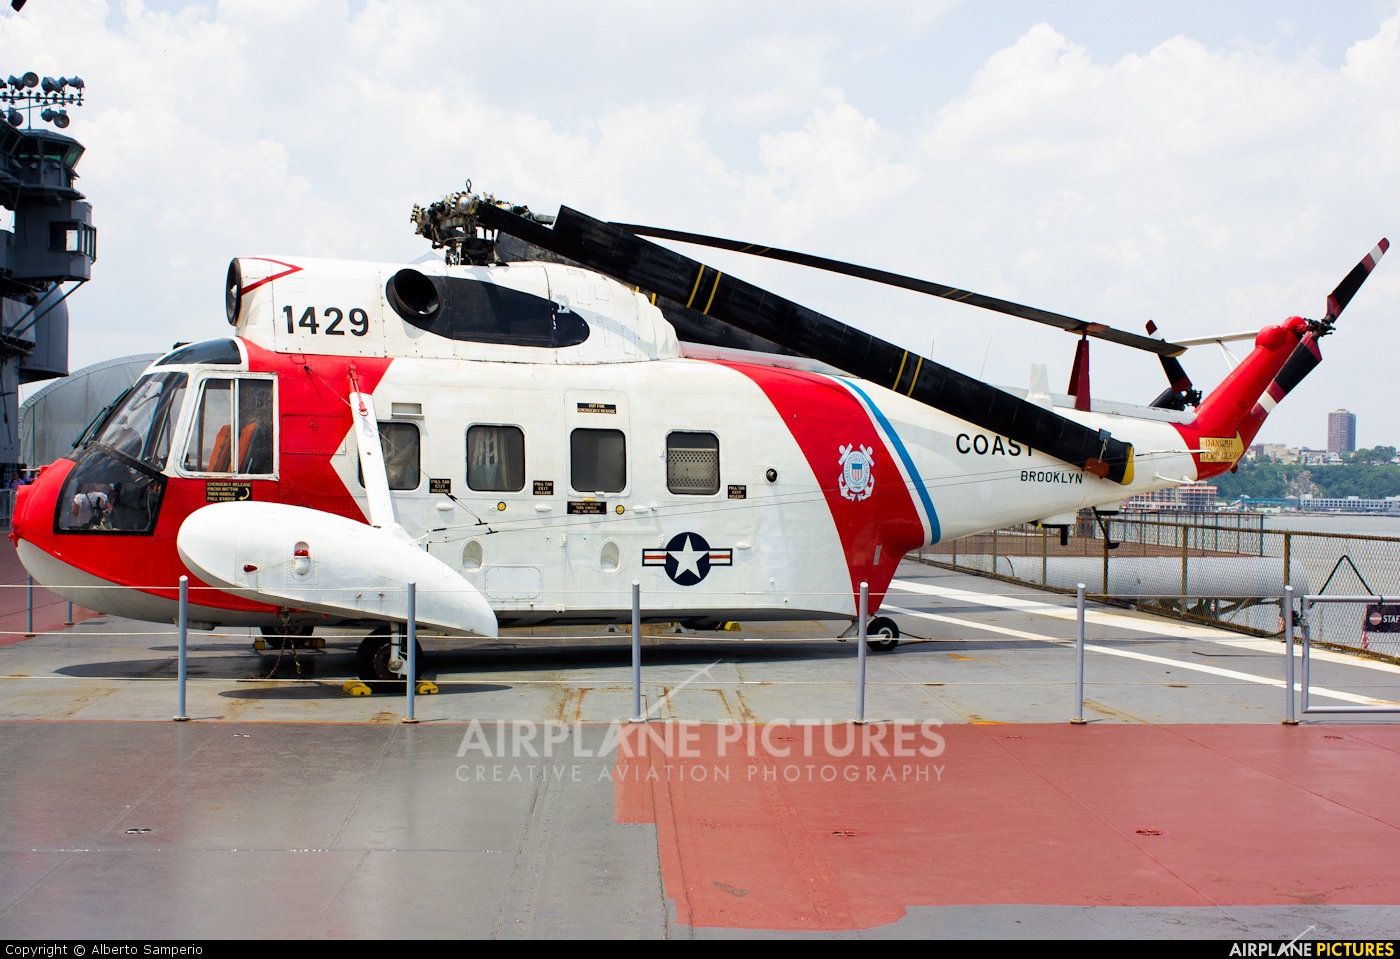 USA - Coast Guard 1429 aircraft at New York - Intrepid Sea Air Museum